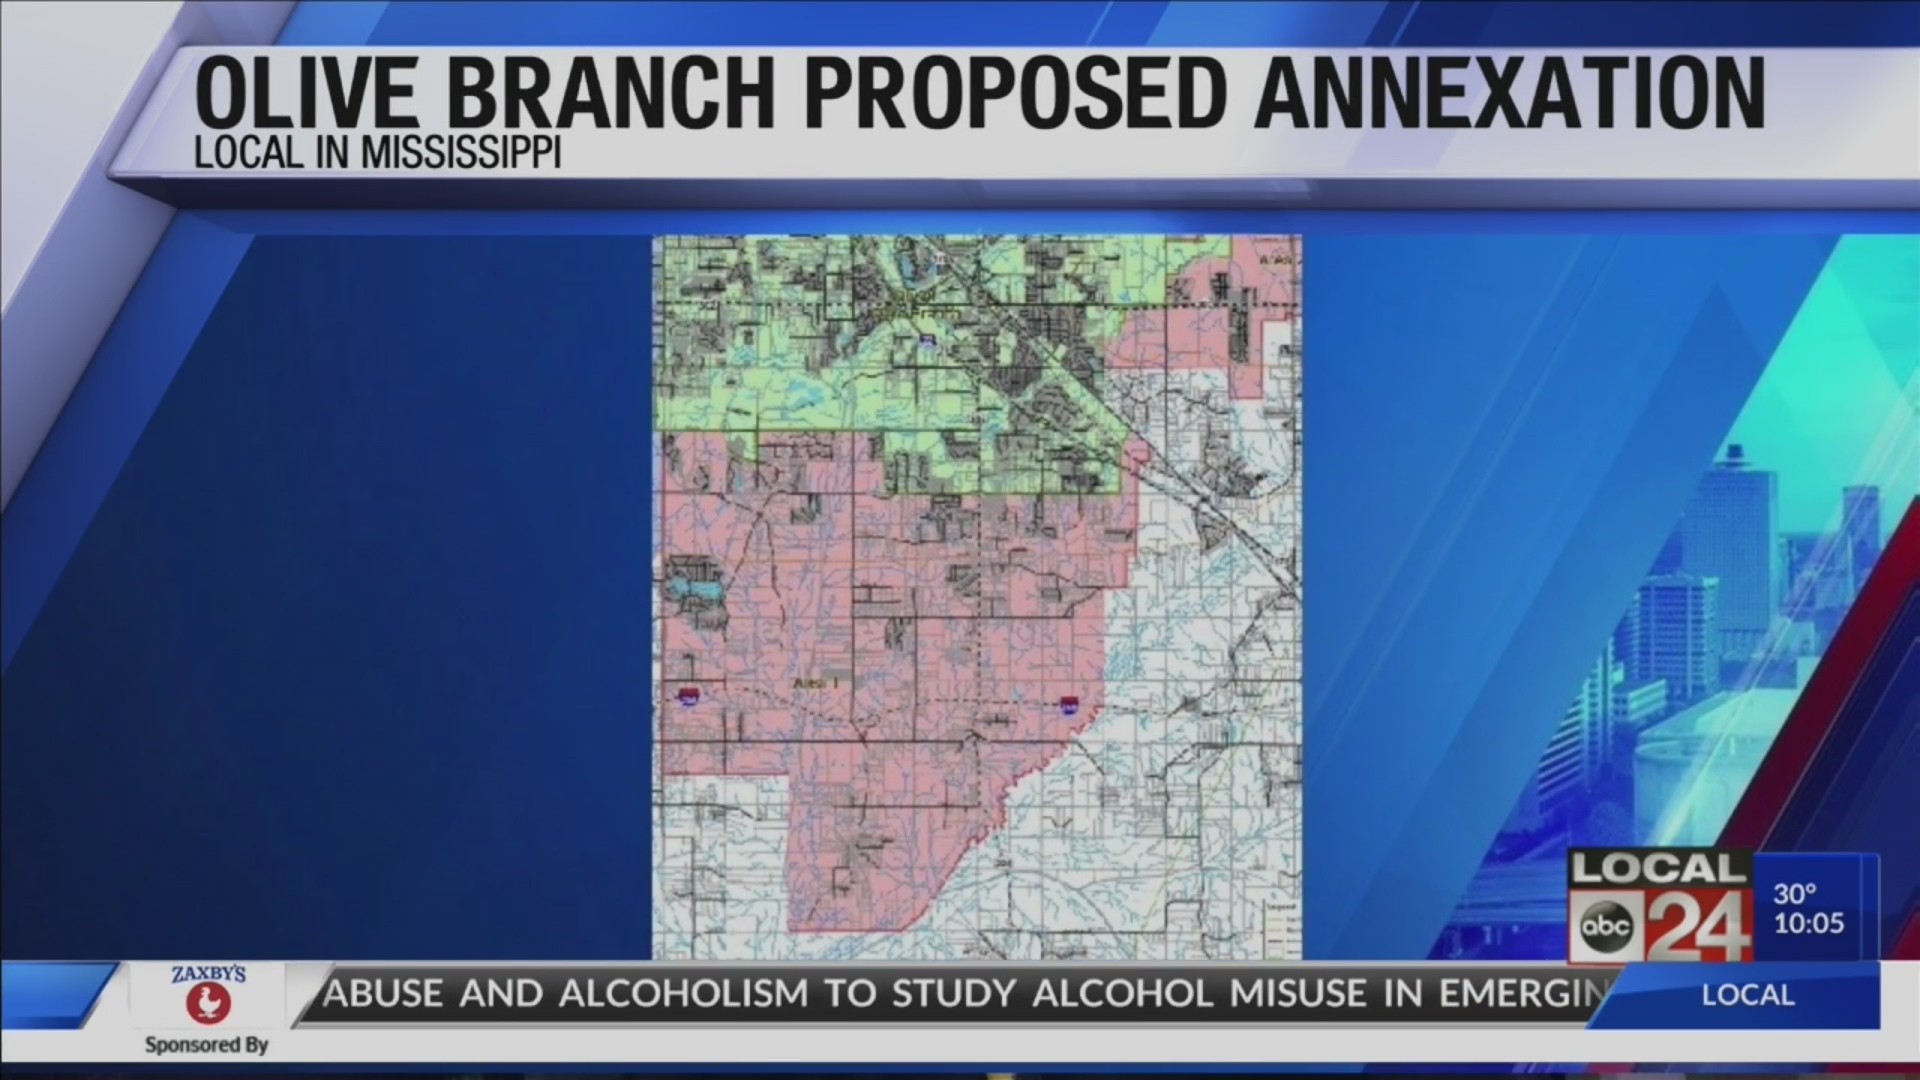 Mississippi lawmakers consider legislation that could halt Olive Branch annexation